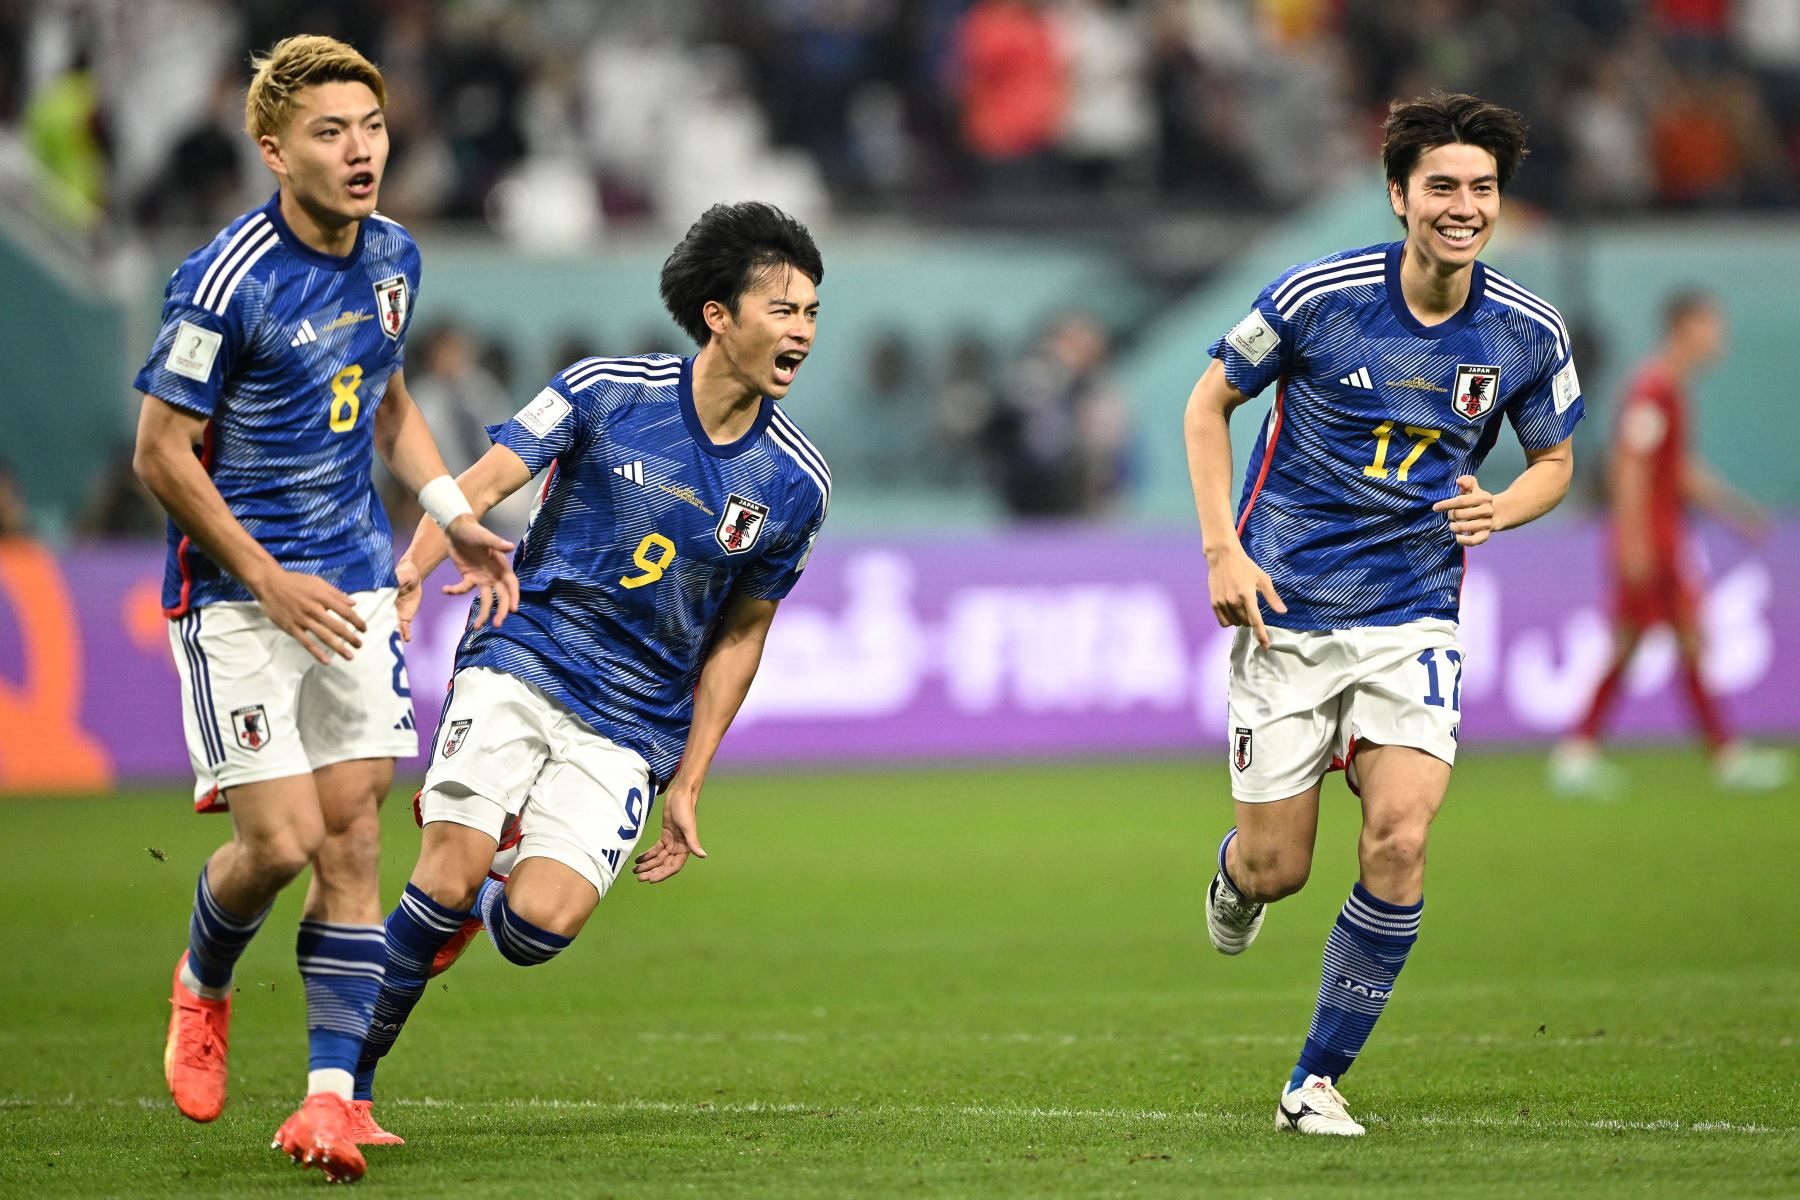 El mediocampista japonés Ritsu Doan  celebra marcar el primer gol de su equipo durante el partido de fútbol del Grupo E de la Copa Mundial Qatar 2022 entre Japón y España en el Estadio Internacional Khalifa en Doha el 1 de diciembre de 2022.
Foto: AFP